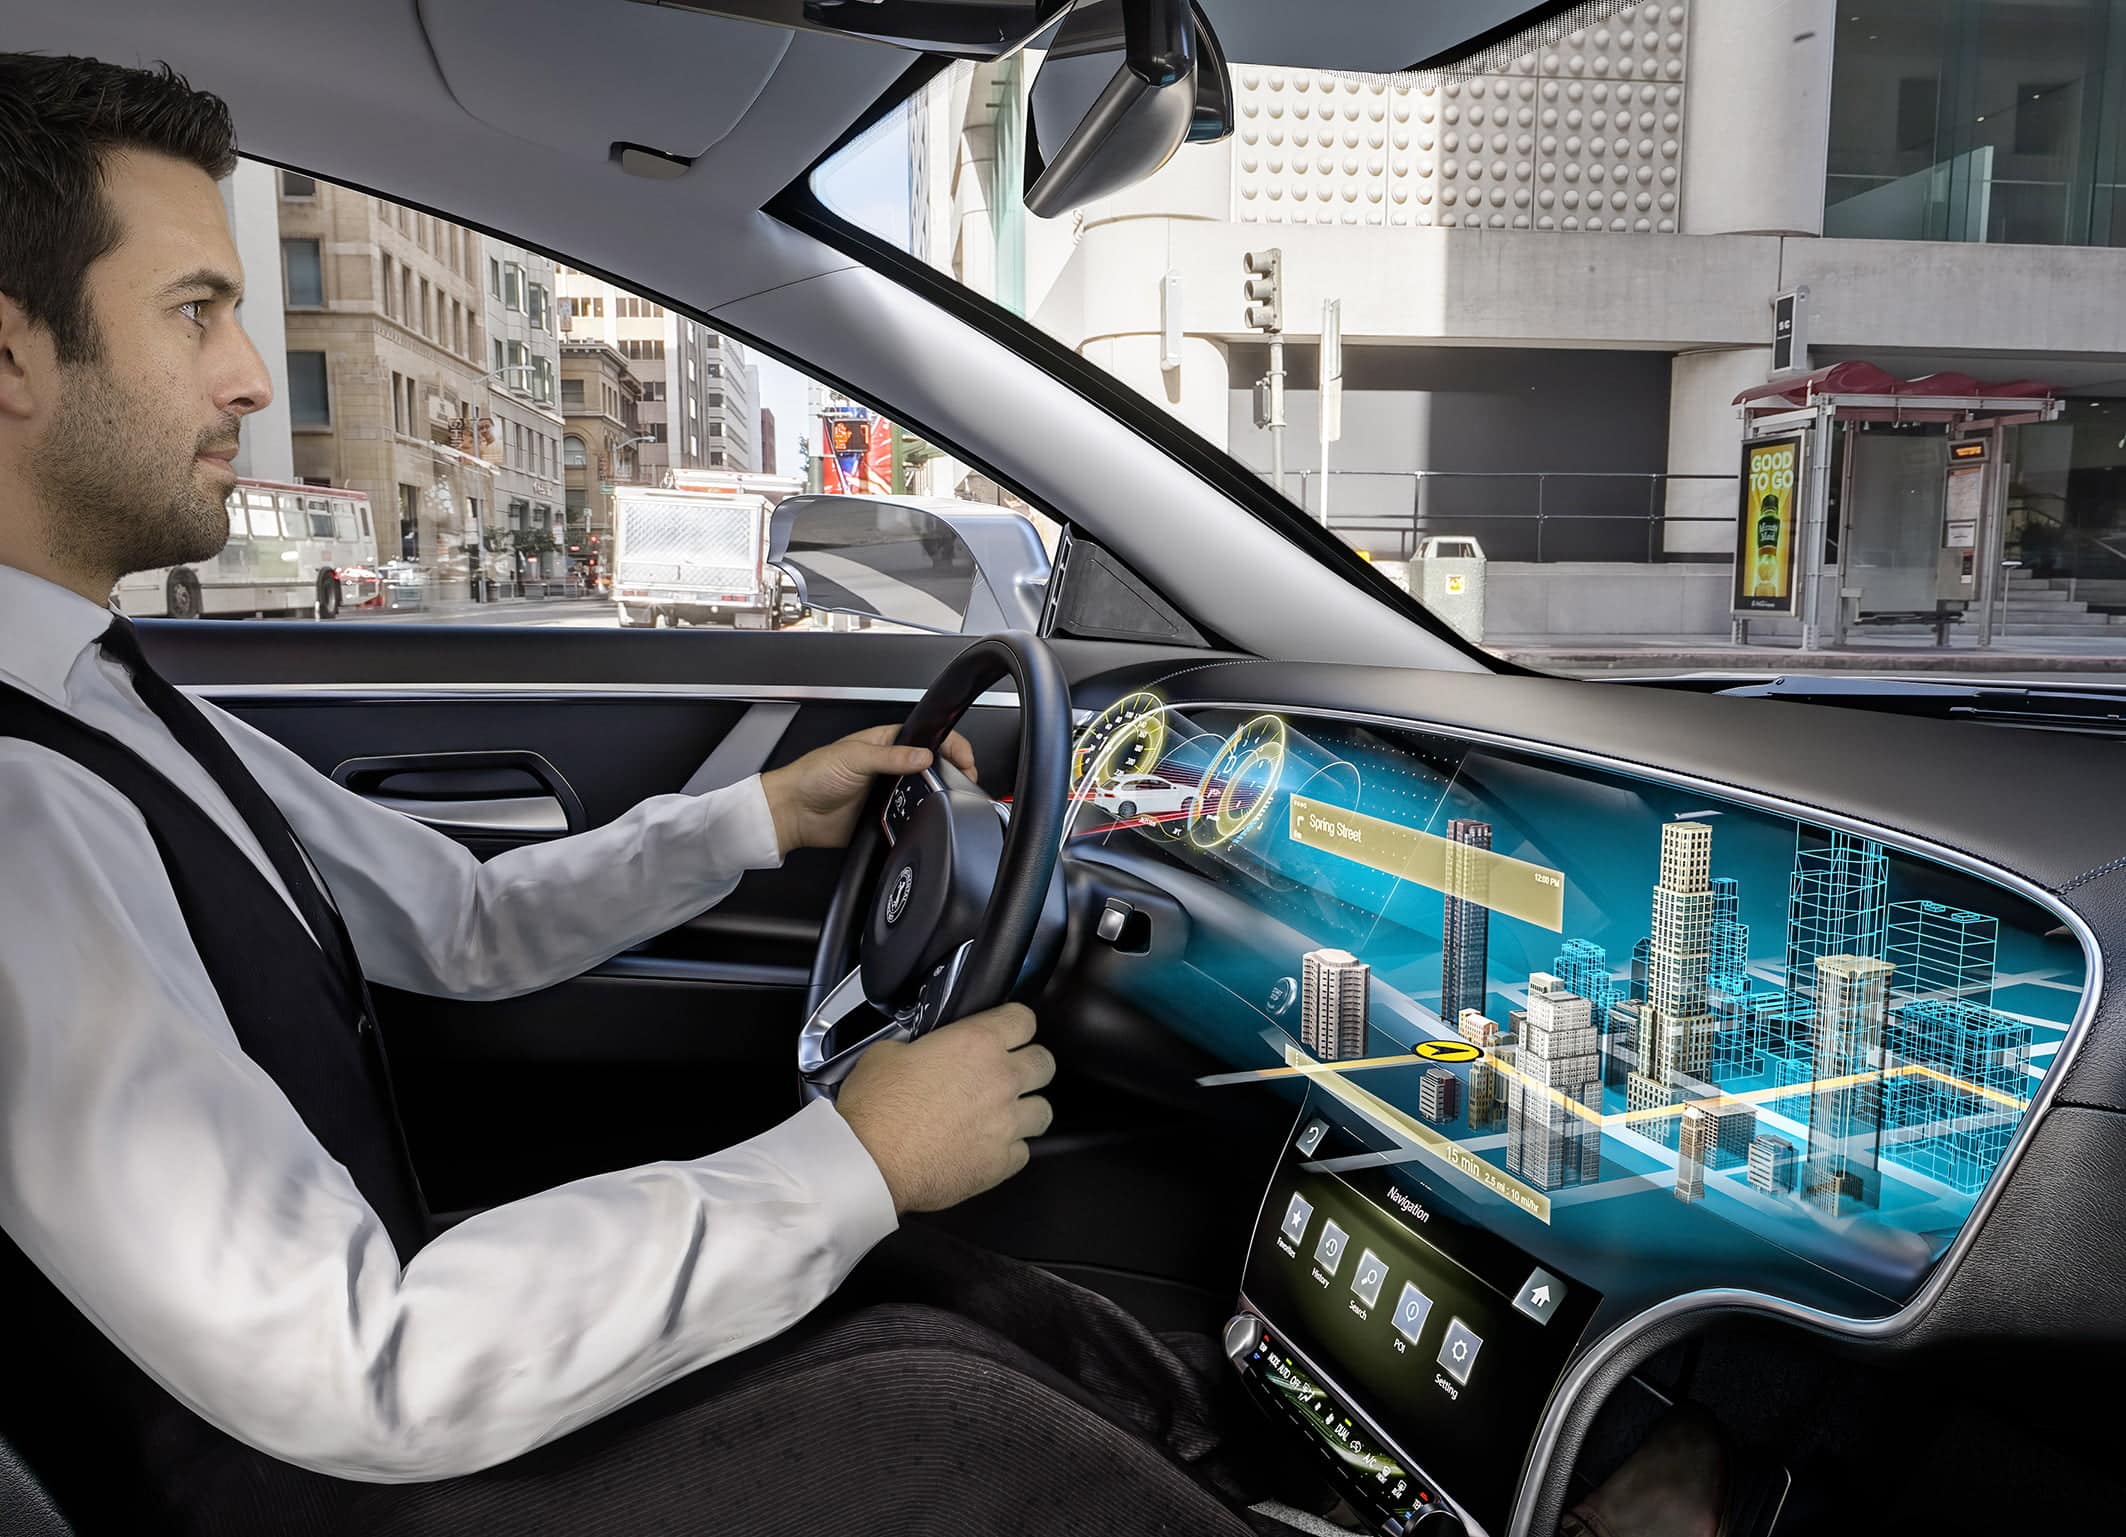 Display technology. Дисплей дополненной реальности авто. Большой экран в машину. Технологии будущего автомобили. Дополненная реальность в автомобиле.